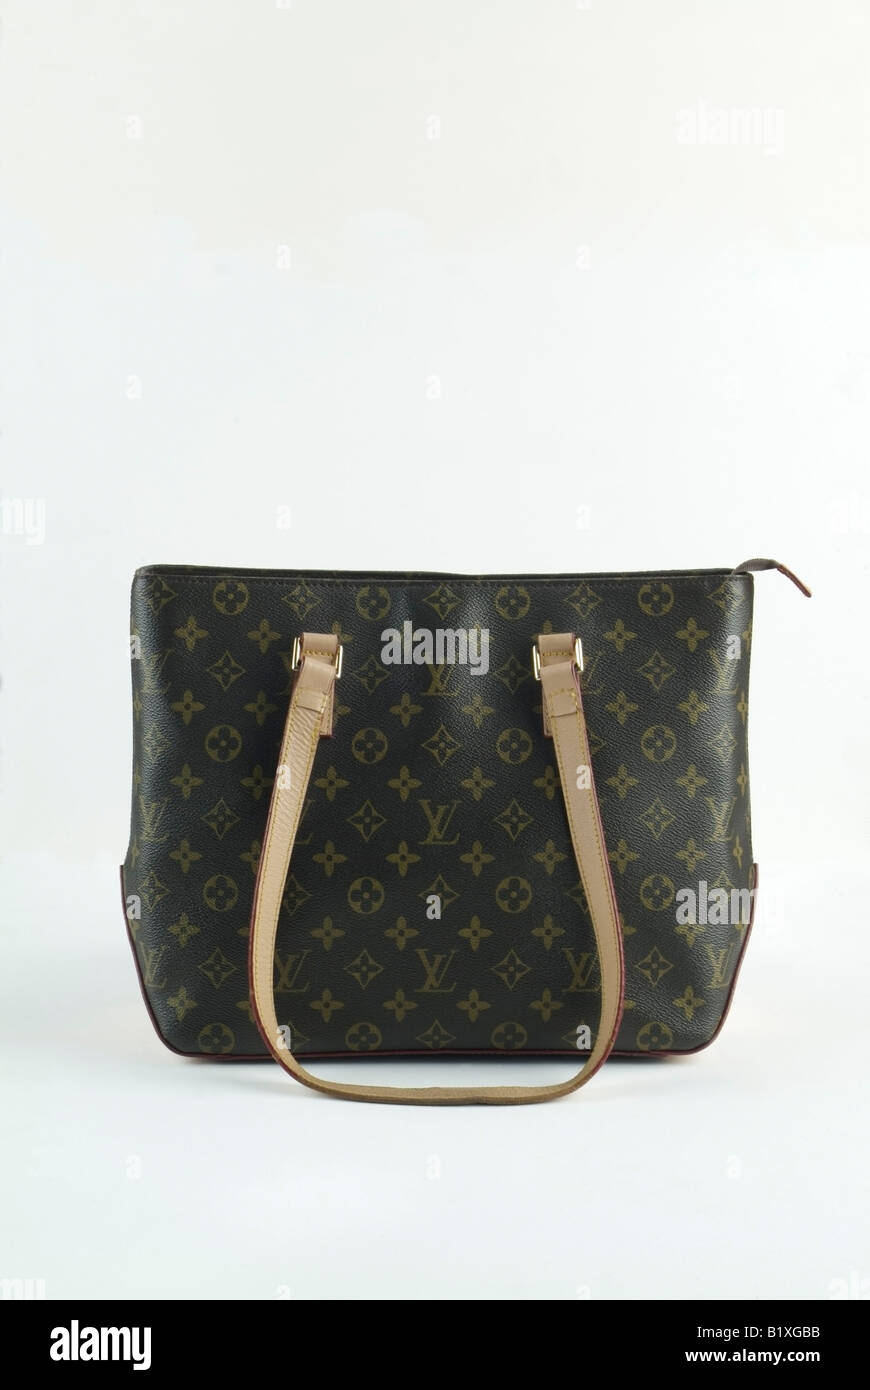 A counterfeit Louis Vuitton women's handbag. Stock Photo